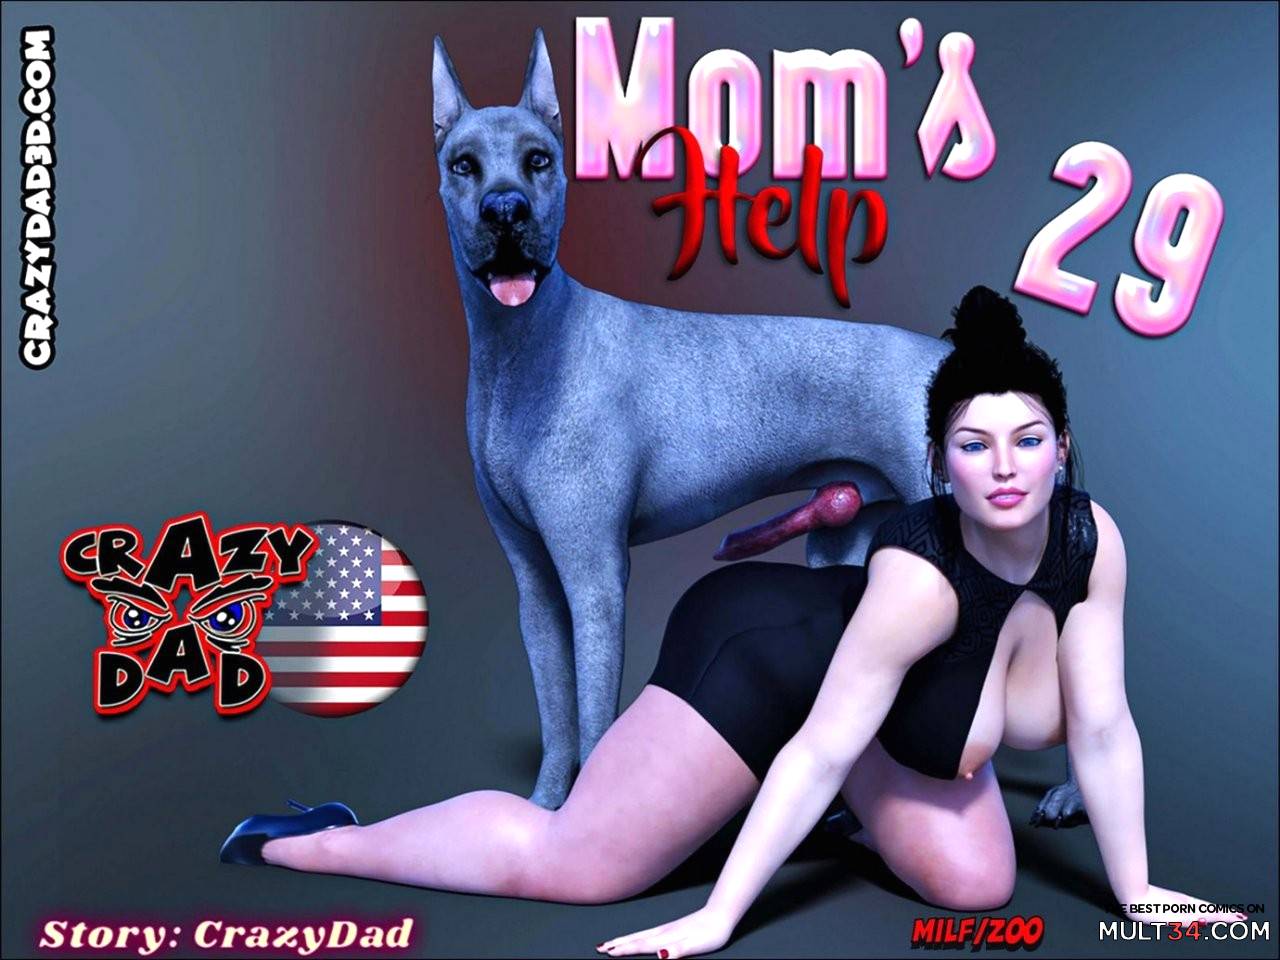 Cartoon Porn Doggy Momma - Mom's Help 29 porn comic - the best cartoon porn comics, Rule 34 | MULT34